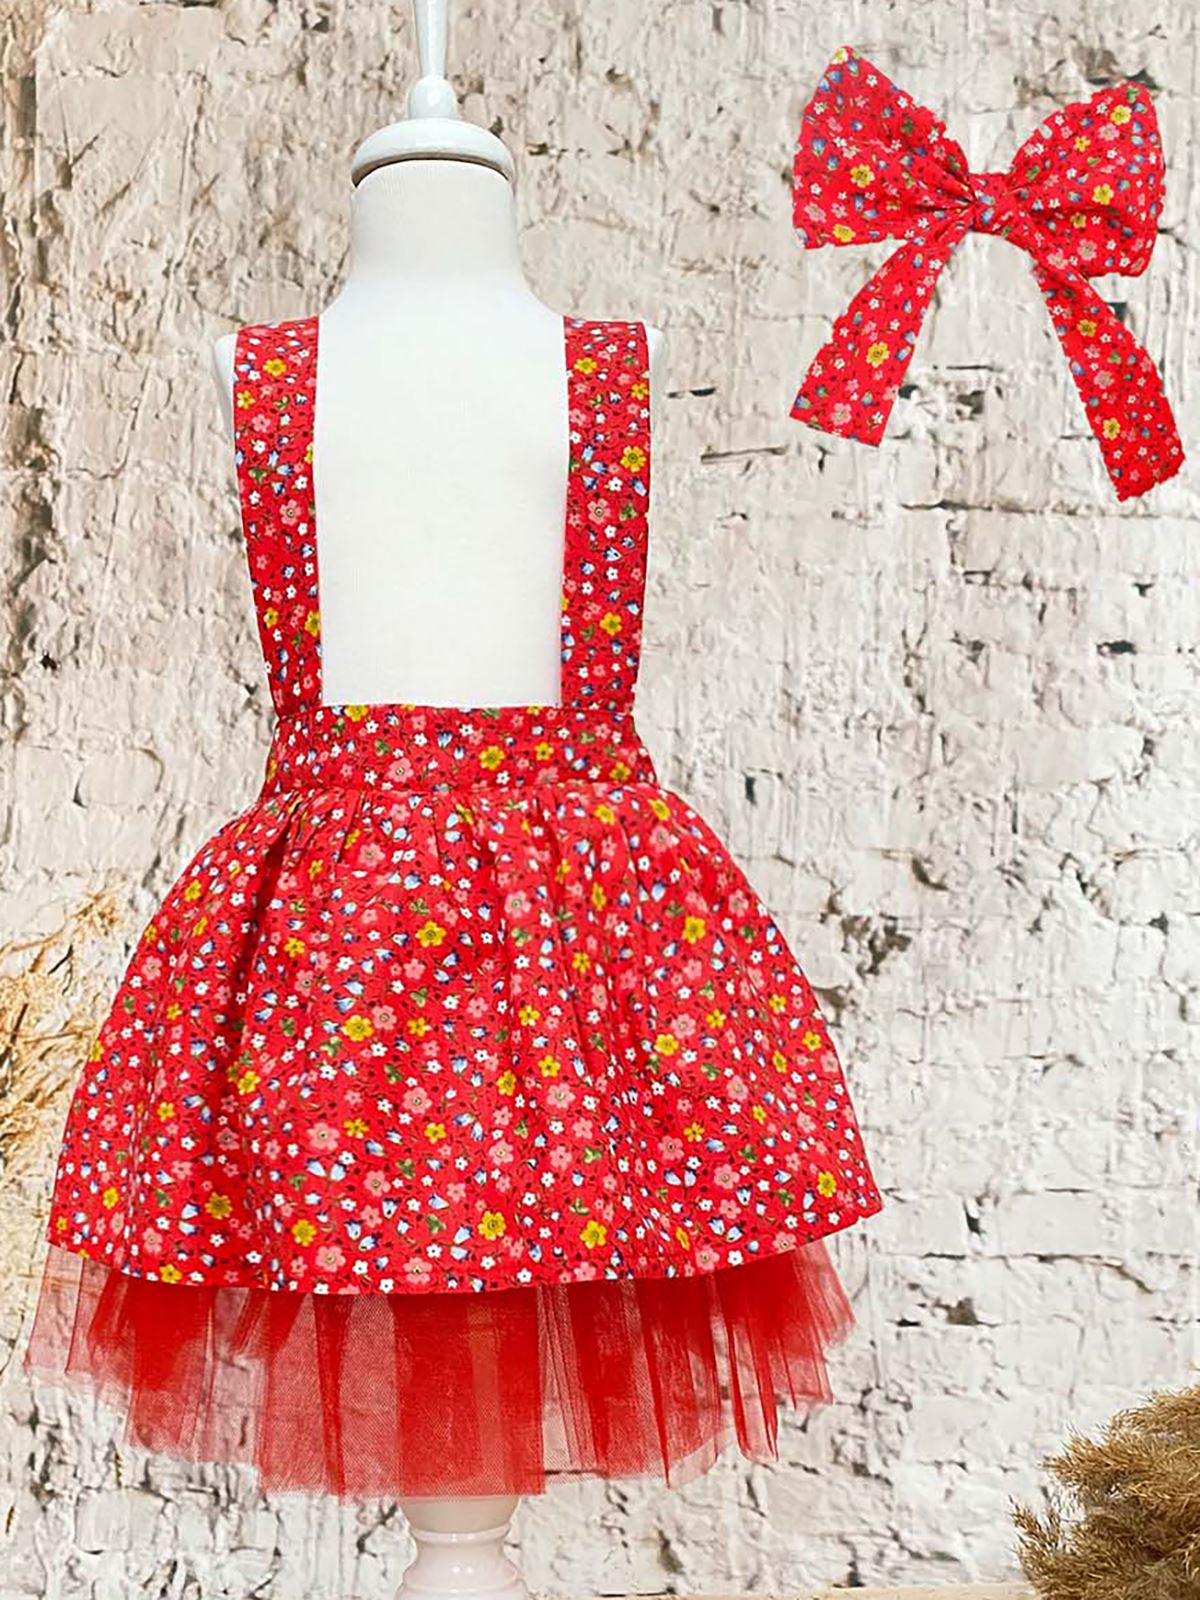 Shecco Babba Kız Çocuk Elbise Bandana Takım Çiçekli 6-10 Yaş Kırmızı